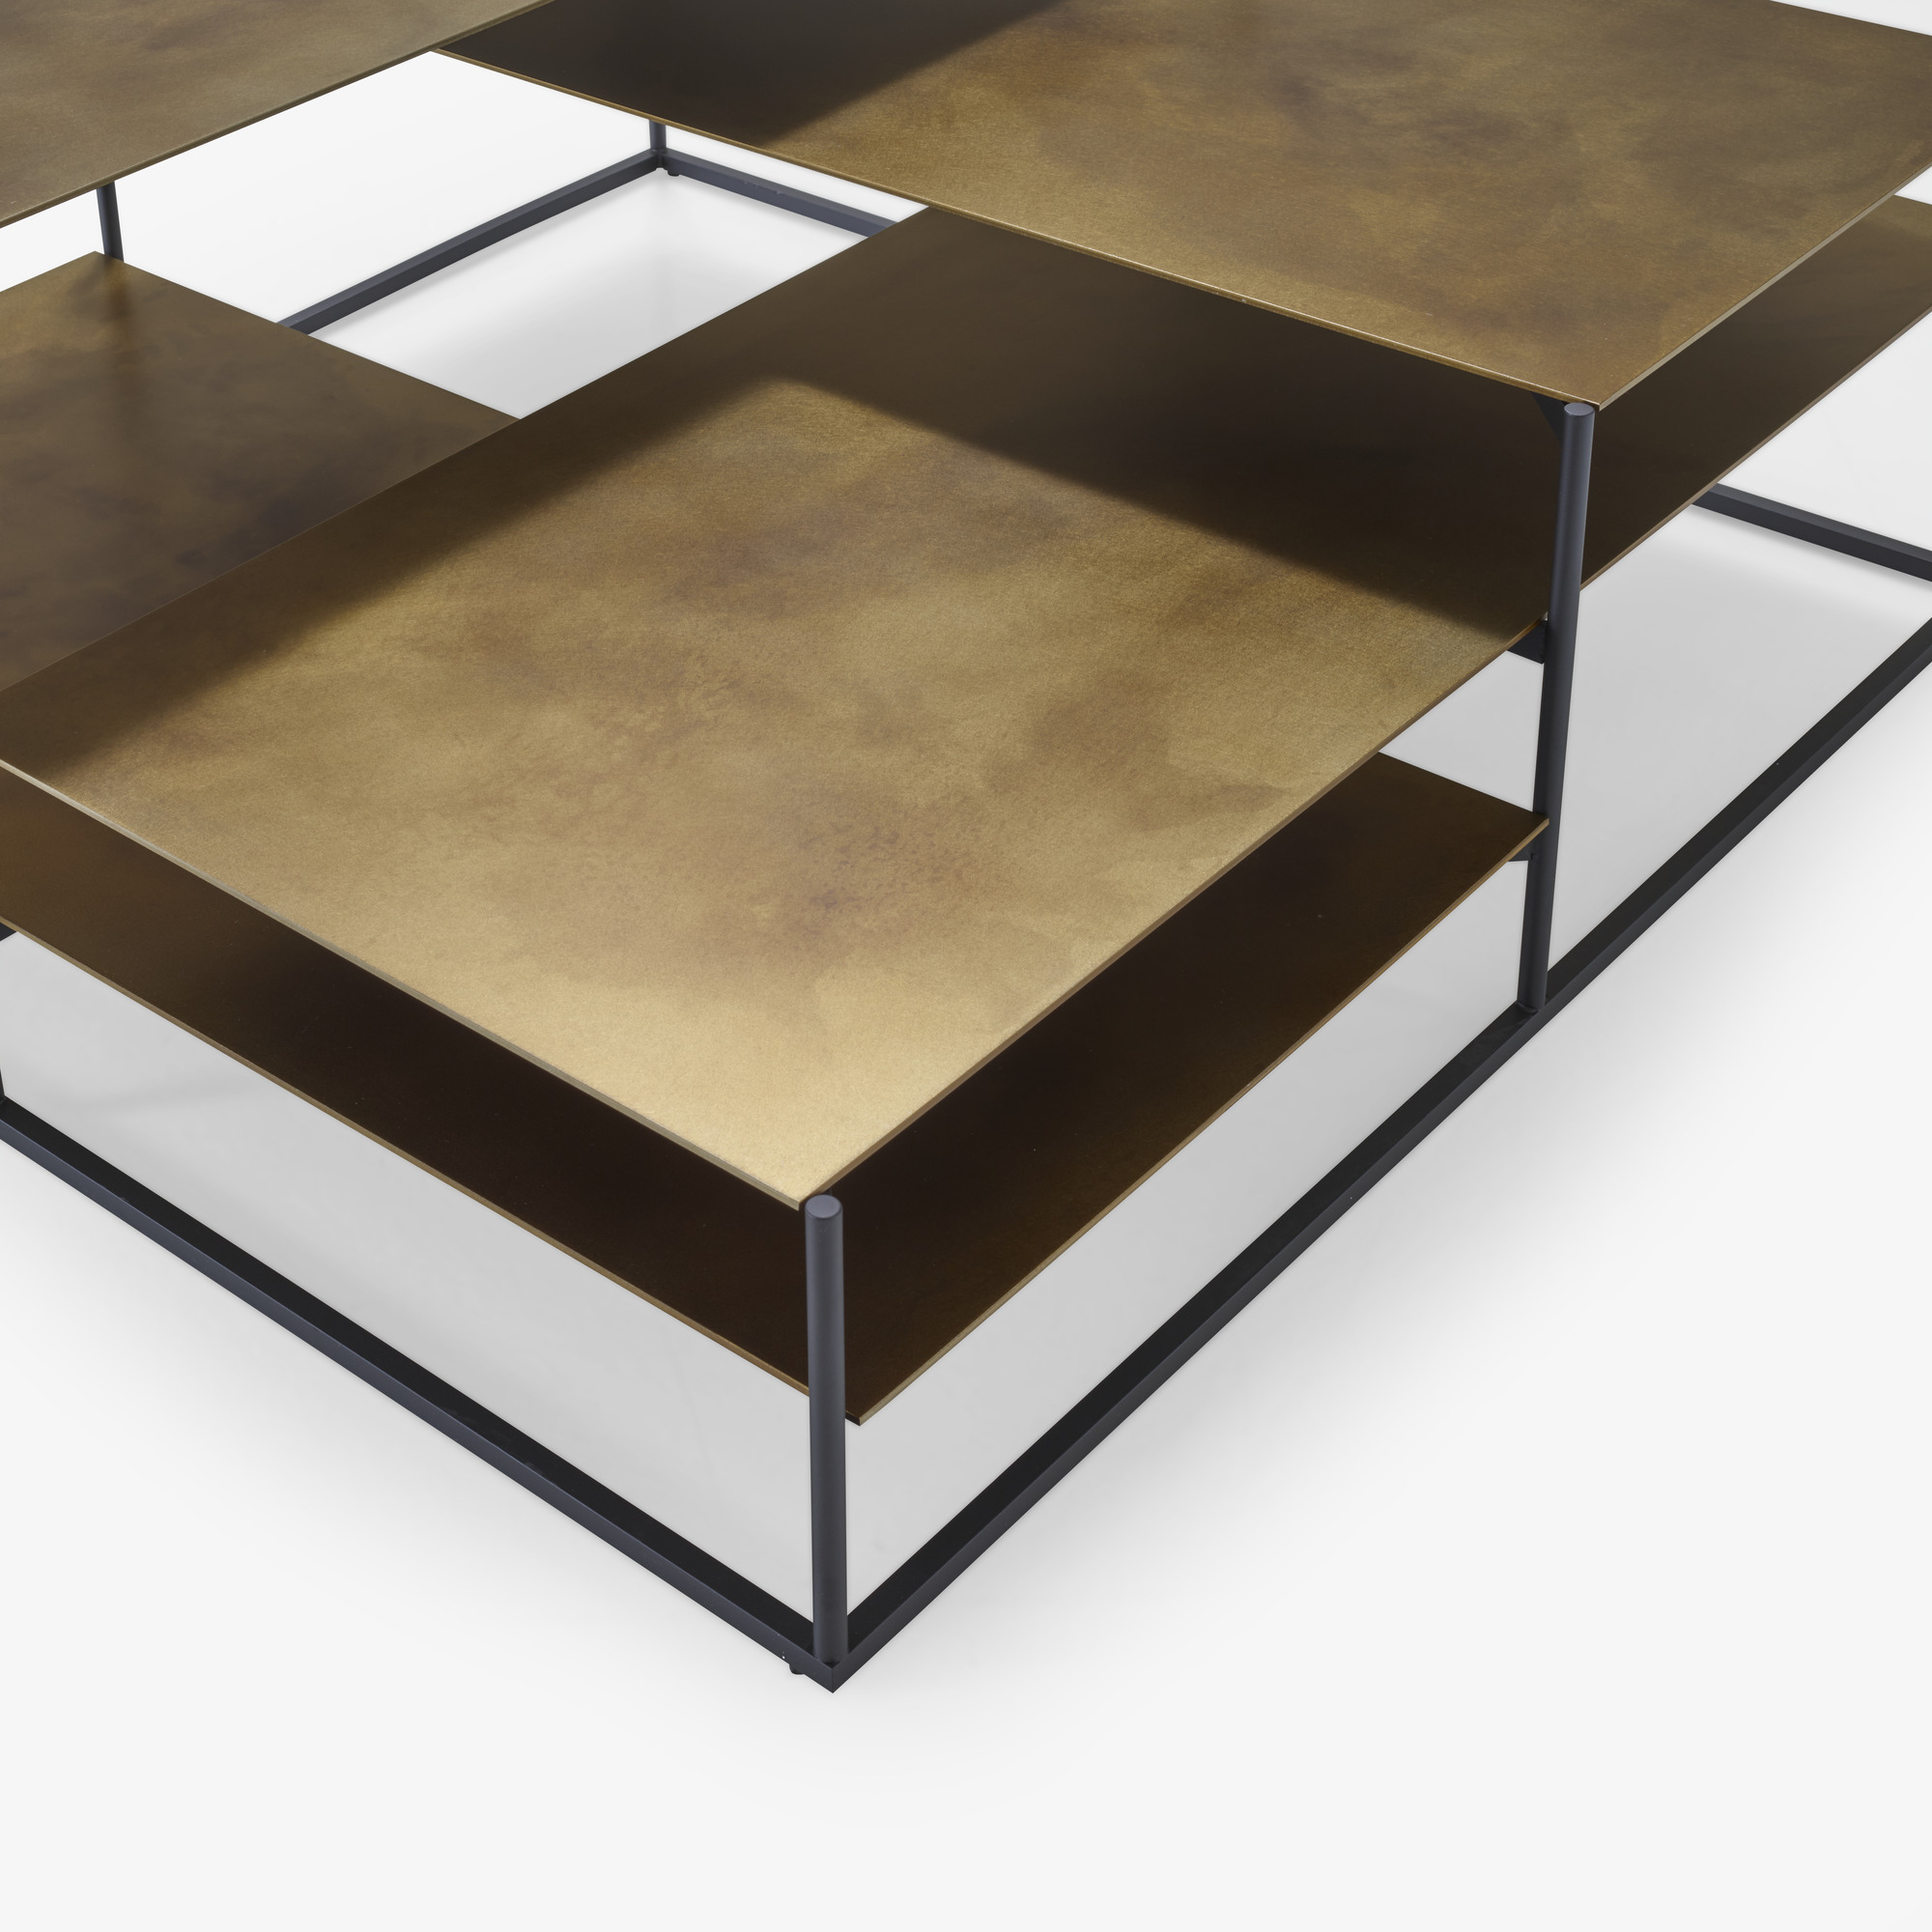 Image Mesa de centro modelo pequeño tops in golden brass aspect steel 4